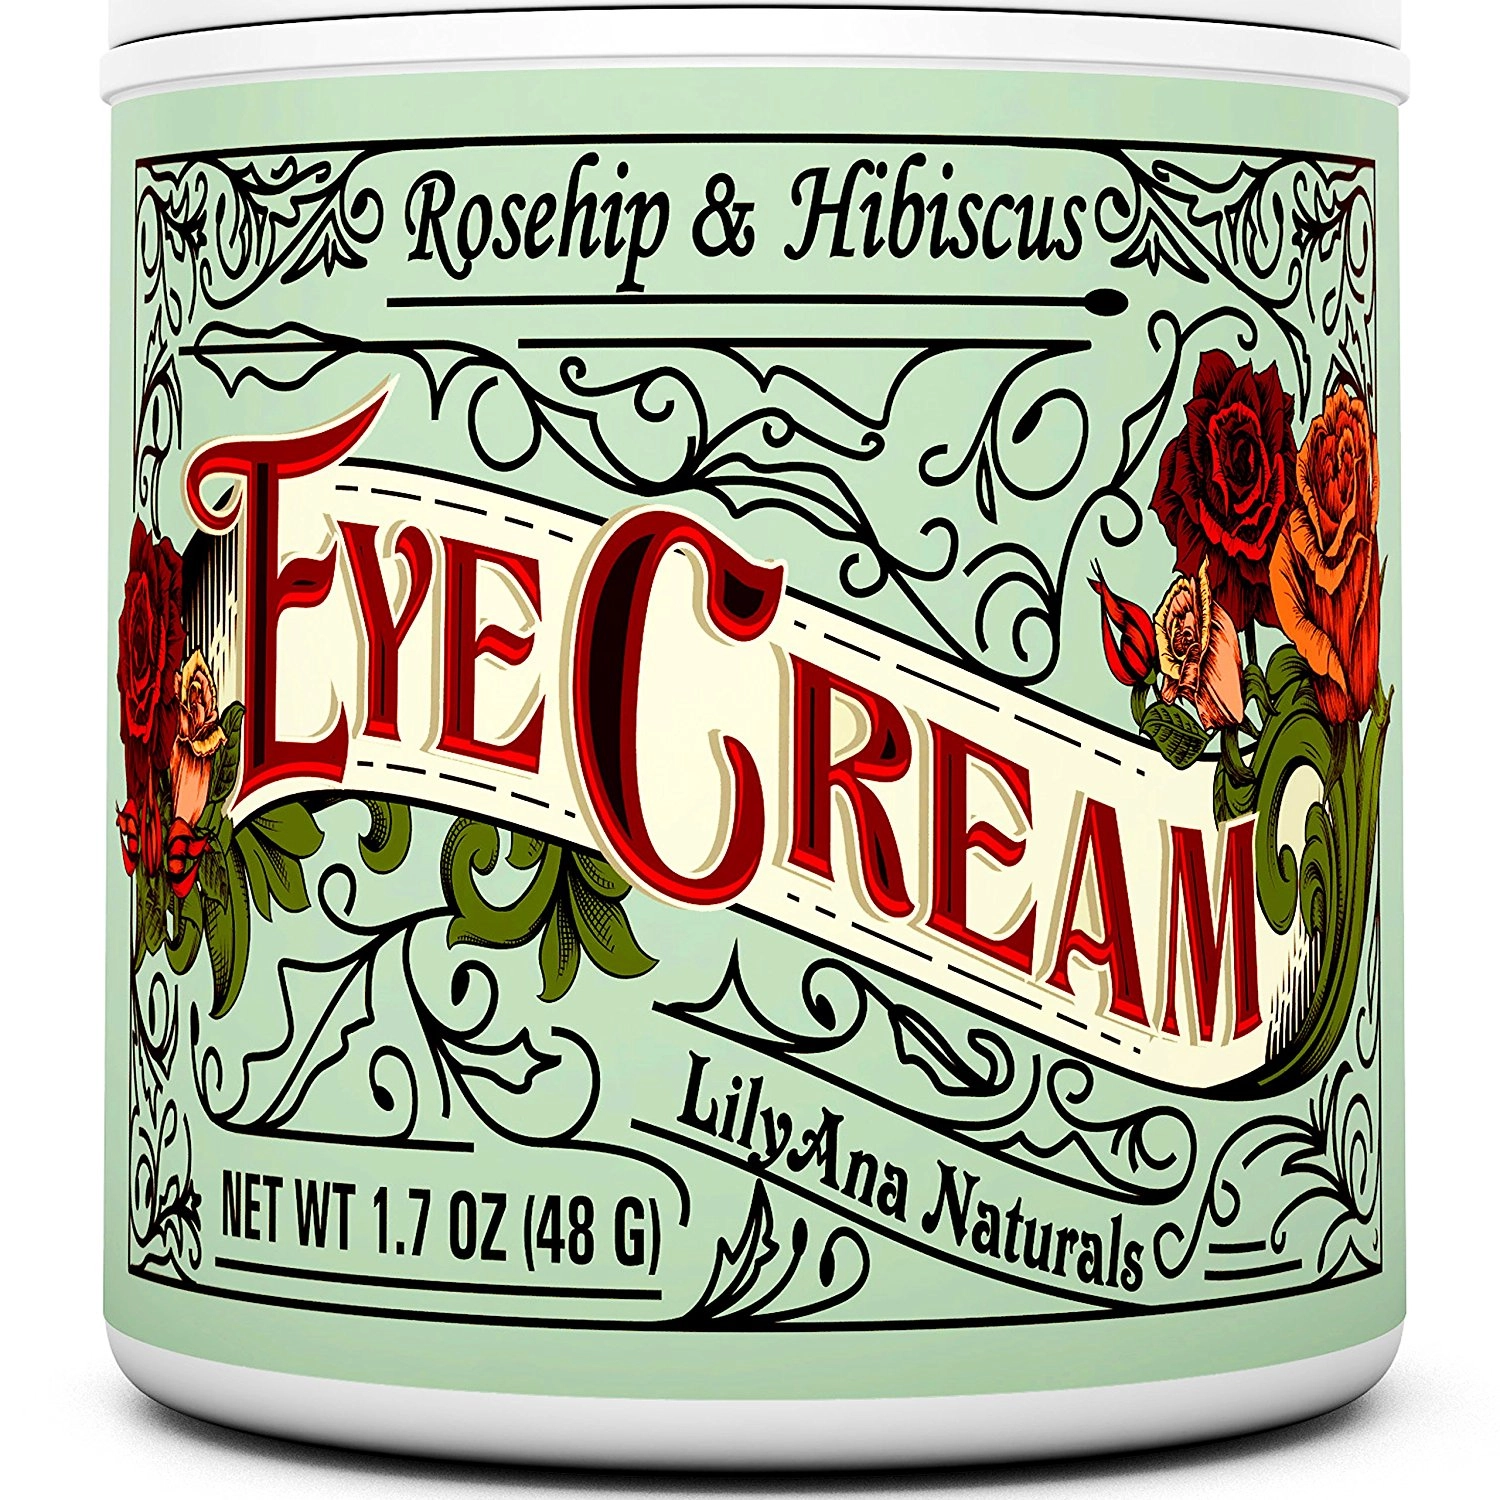 14 Best Eye Creams for Wrinkles: Reviews & Guide